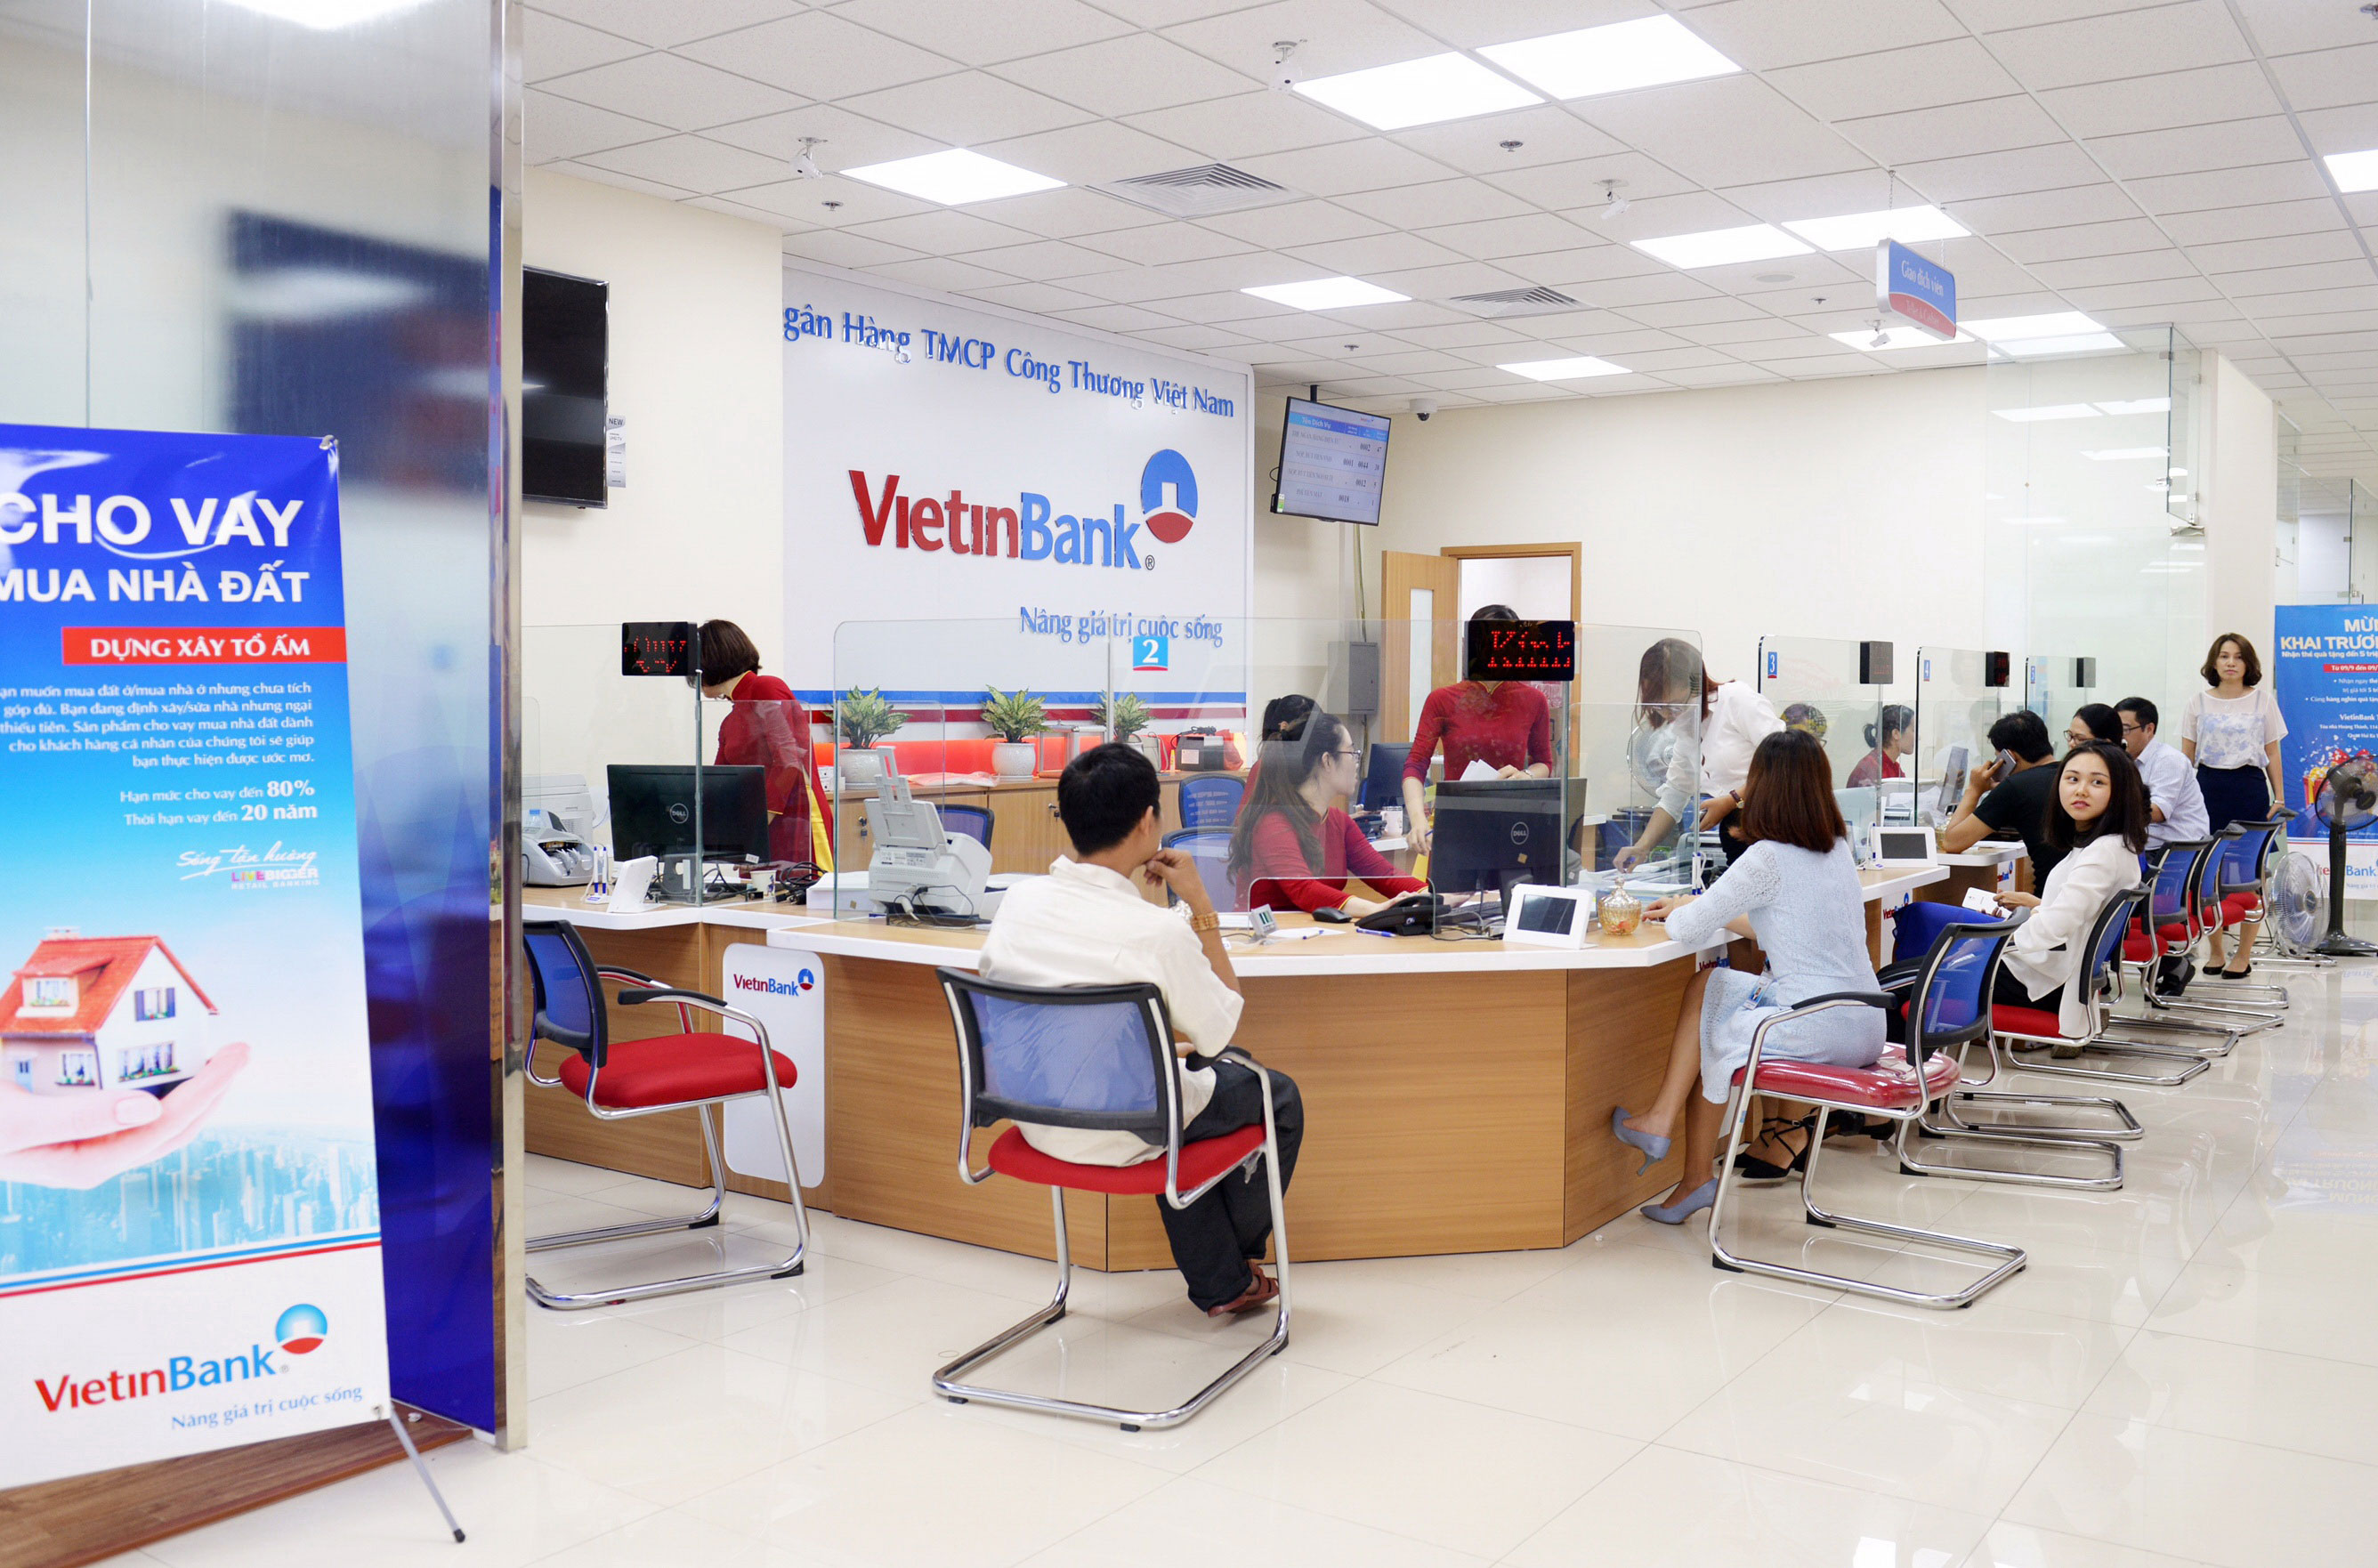 VietinBank hợp tác ngân hàng Nhật Bản: Bạn đang tìm kiếm một ngân hàng uy tín và có khả năng hỗ trợ bạn với các sản phẩm và dịch vụ tài chính đa dạng? Hãy ghé thăm VietinBank - một trong những ngân hàng lớn nhất và được đánh giá cao nhất tại Việt Nam. Đặc biệt, VietinBank hợp tác với các ngân hàng Nhật Bản để mang lại những sản phẩm và dịch vụ tốt nhất cho khách hàng. Hãy xem hình ảnh liên quan để khám phá thêm về VietinBank và các tính năng của ngân hàng này nhé!